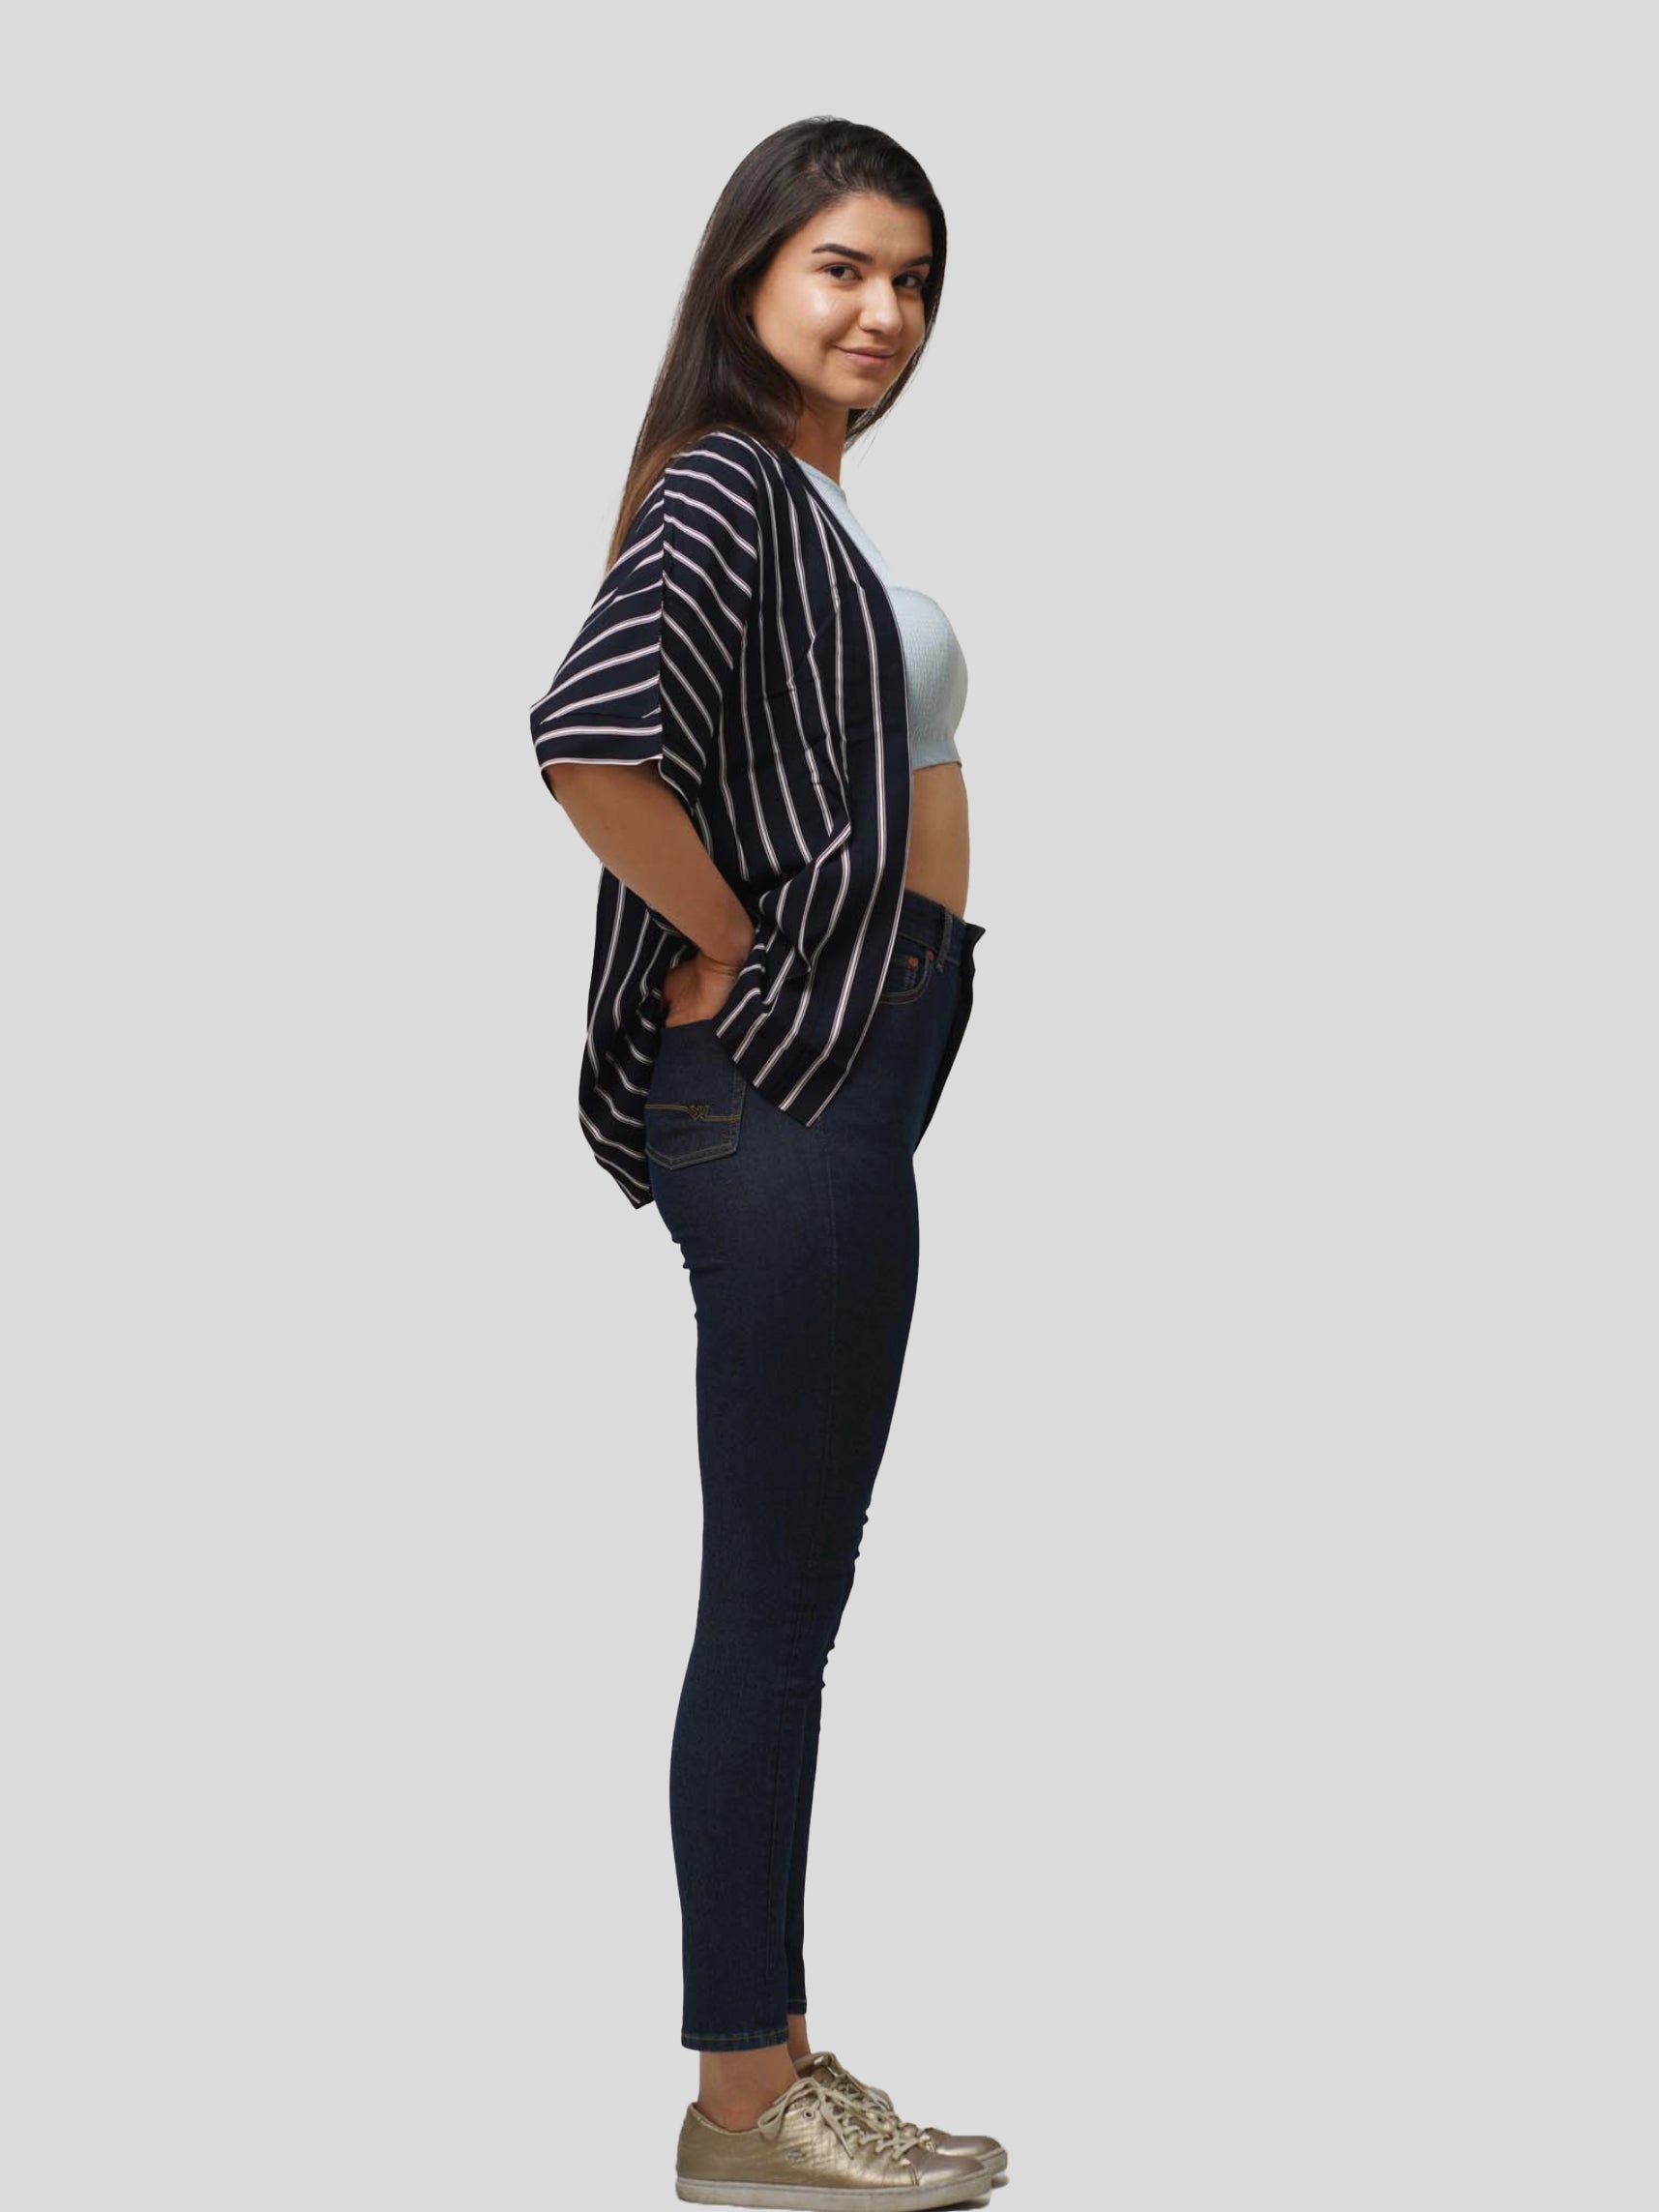 Womens Half Sleeve Tops Stripe Printed Loose Fit Western Style shrugs | Top only. - inteblu